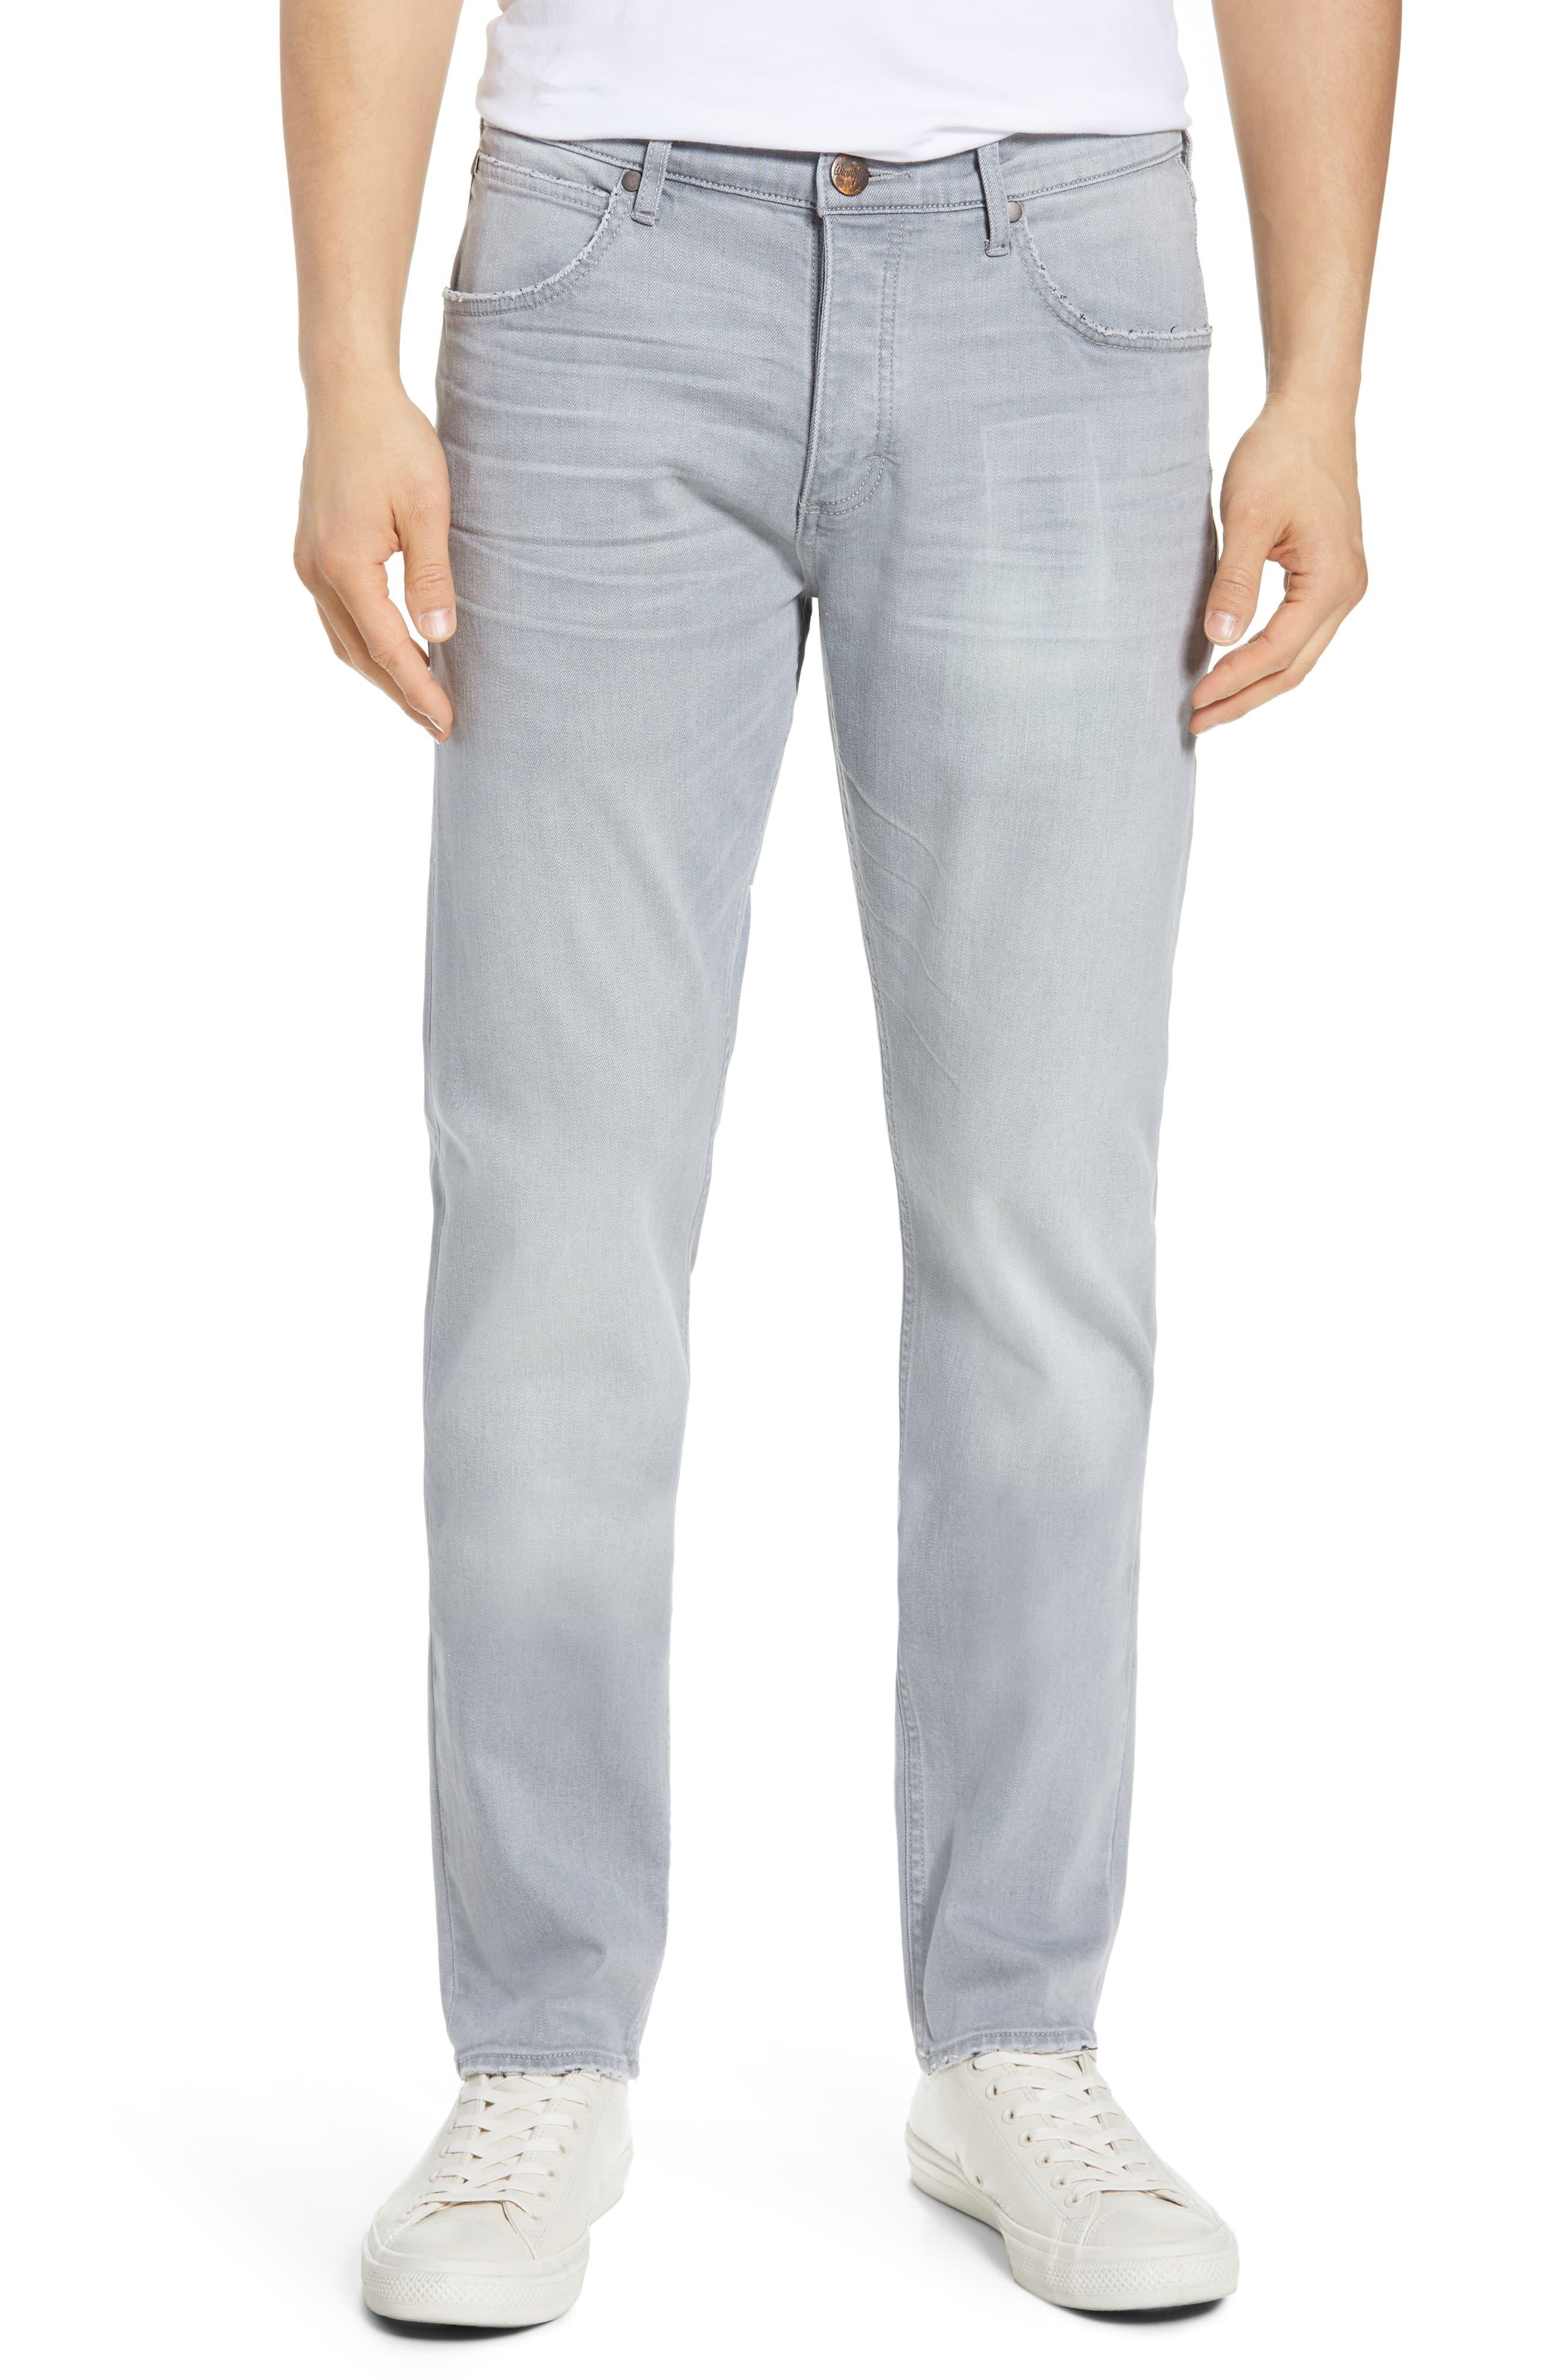 Wrangler Slider Slim Straight Leg Jeans in Gray for Men - Lyst